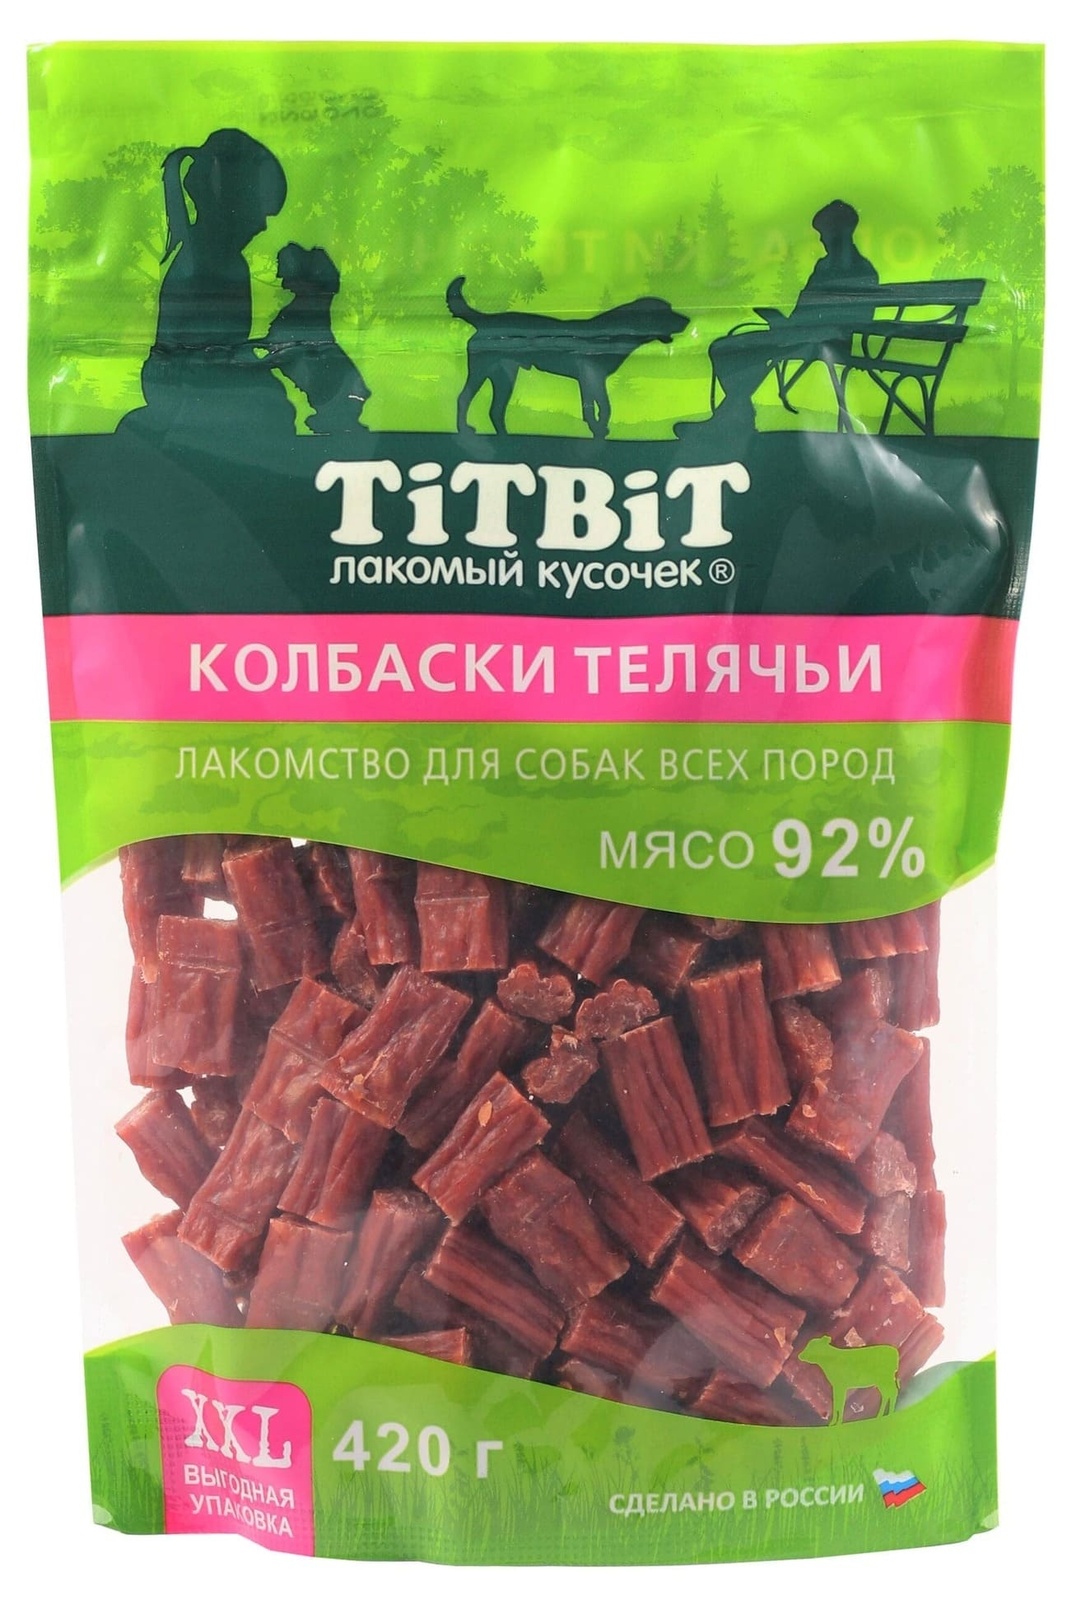 TiTBiT TiTBiT колбаски телячьи для собак всех пород, выгодная упаковка XXL (420 г) titbit titbit палочки колбасные для собак всех пород выгодная упаковка xxl 550 г